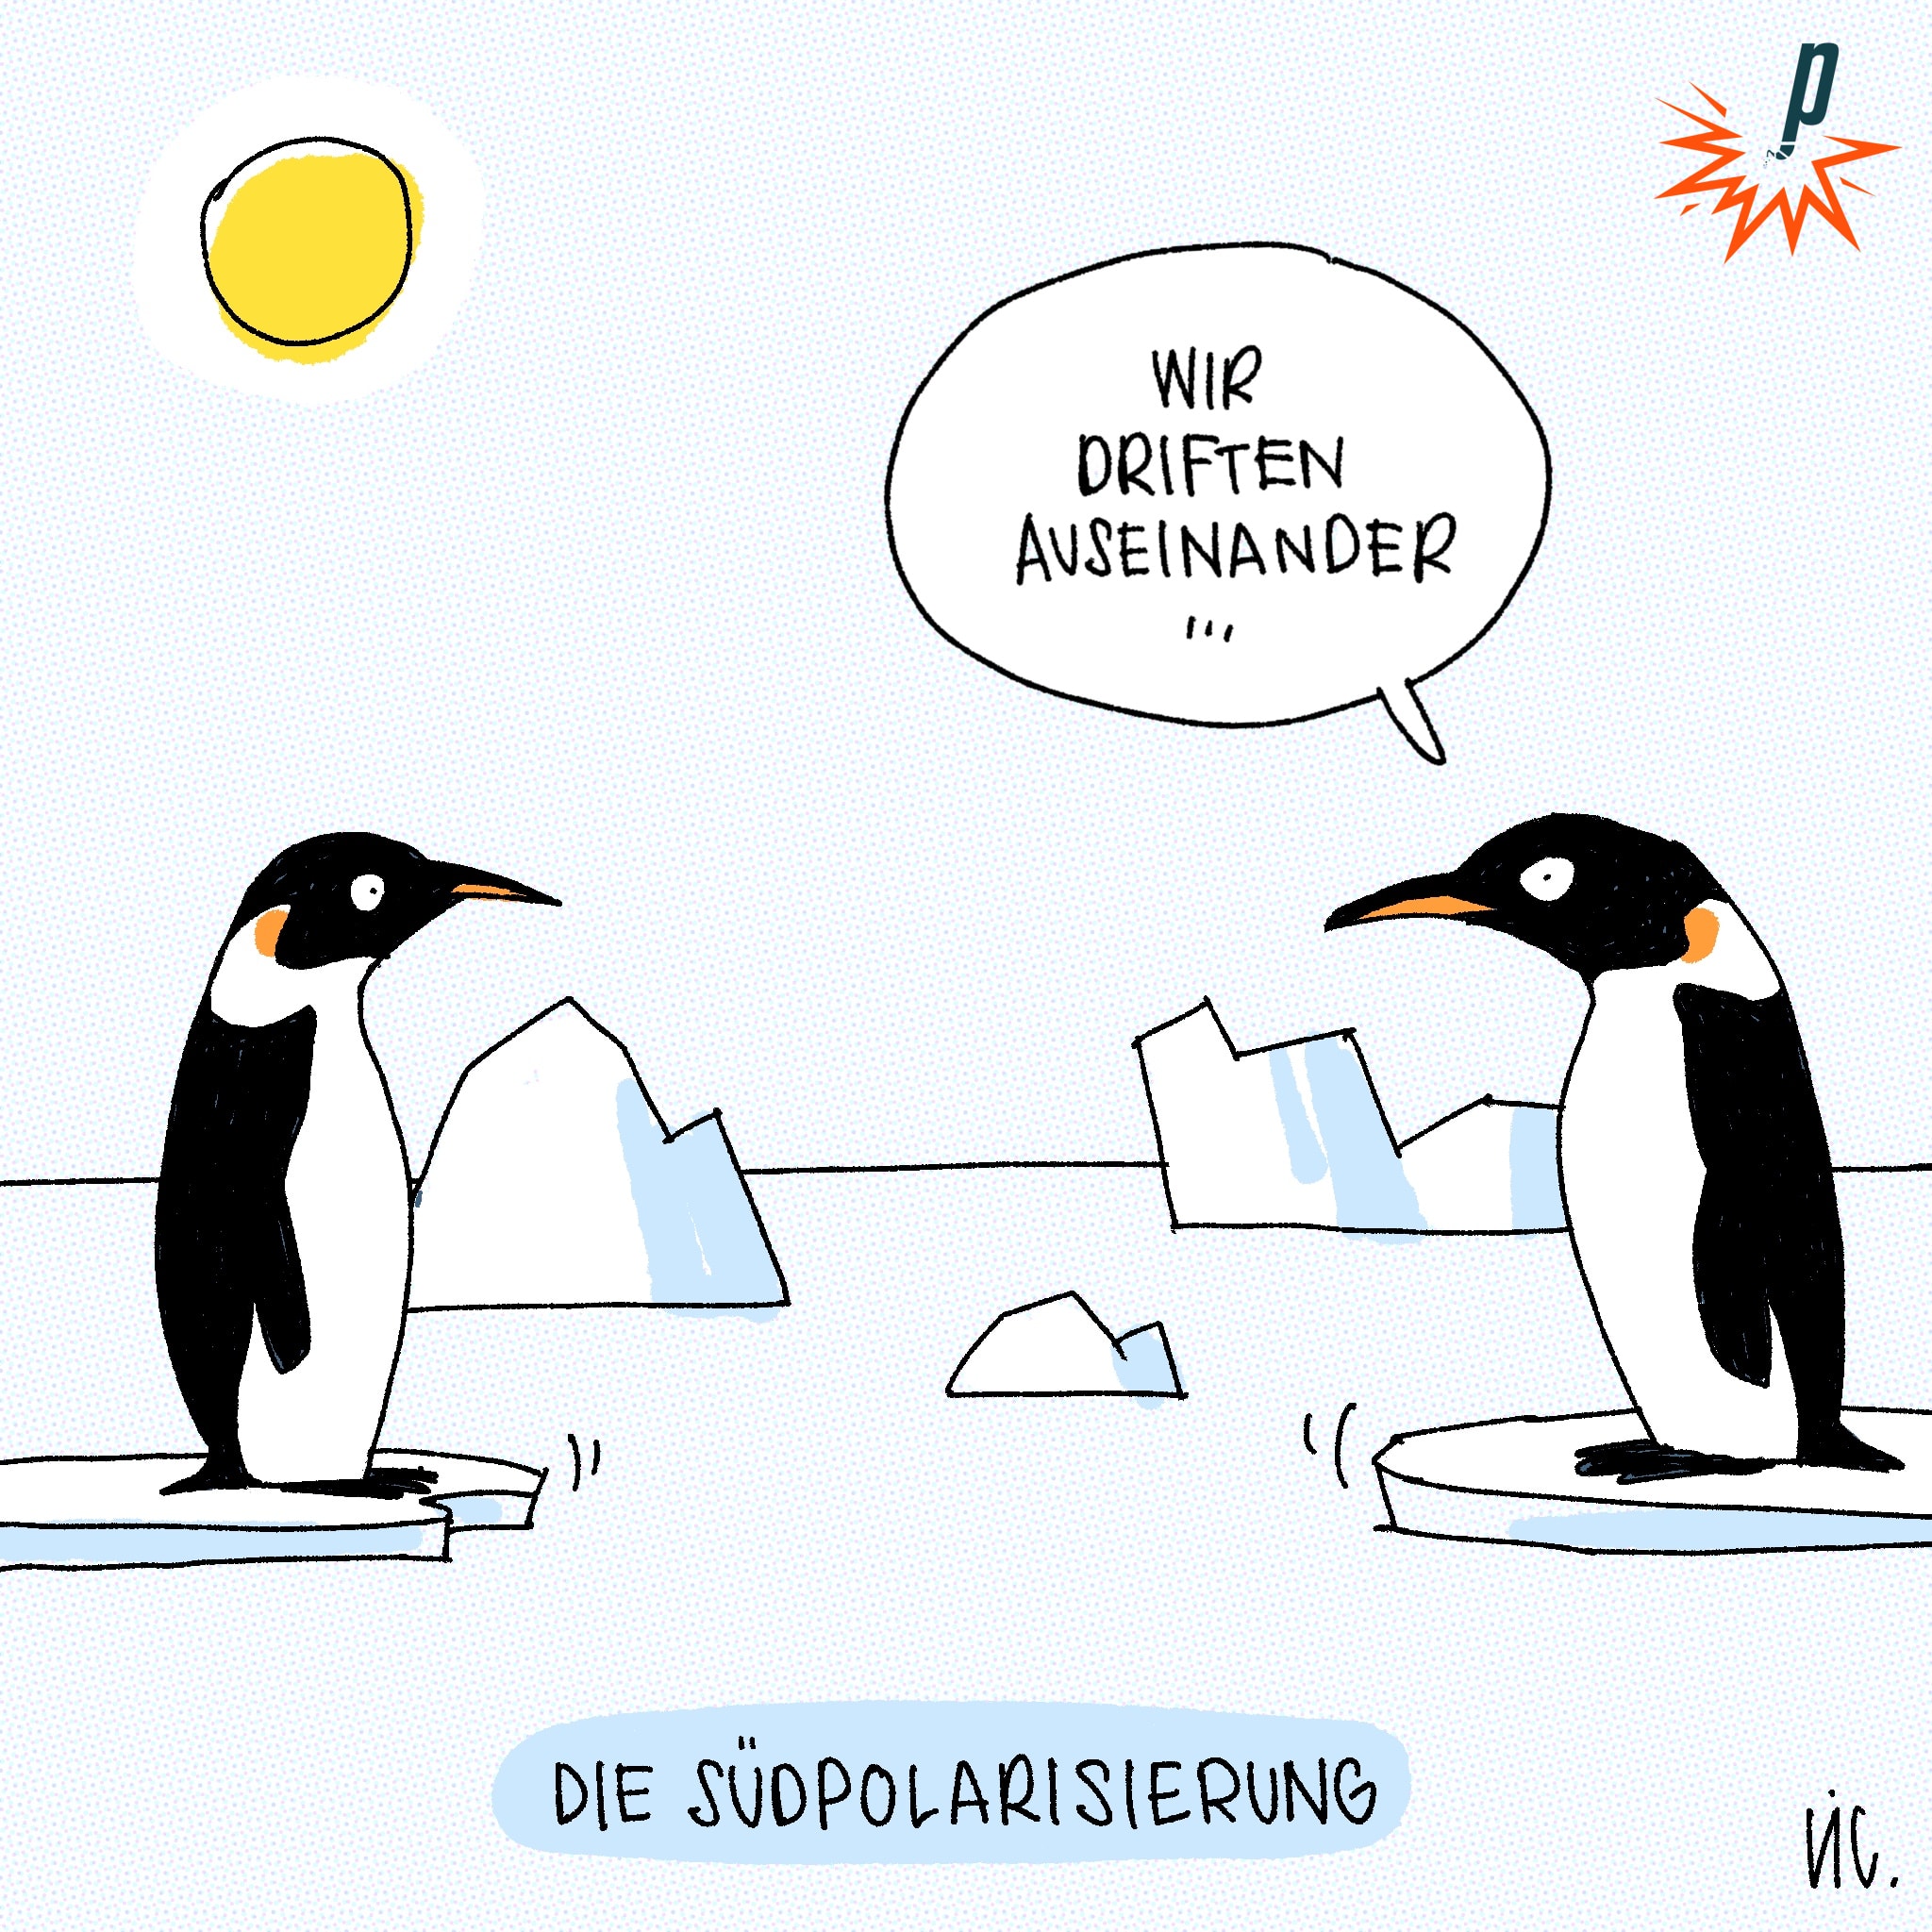 Zwei Pinguine driften auf ihren schmelzenden Eisschollen auseinander, das ist die Südpolarisierung. 